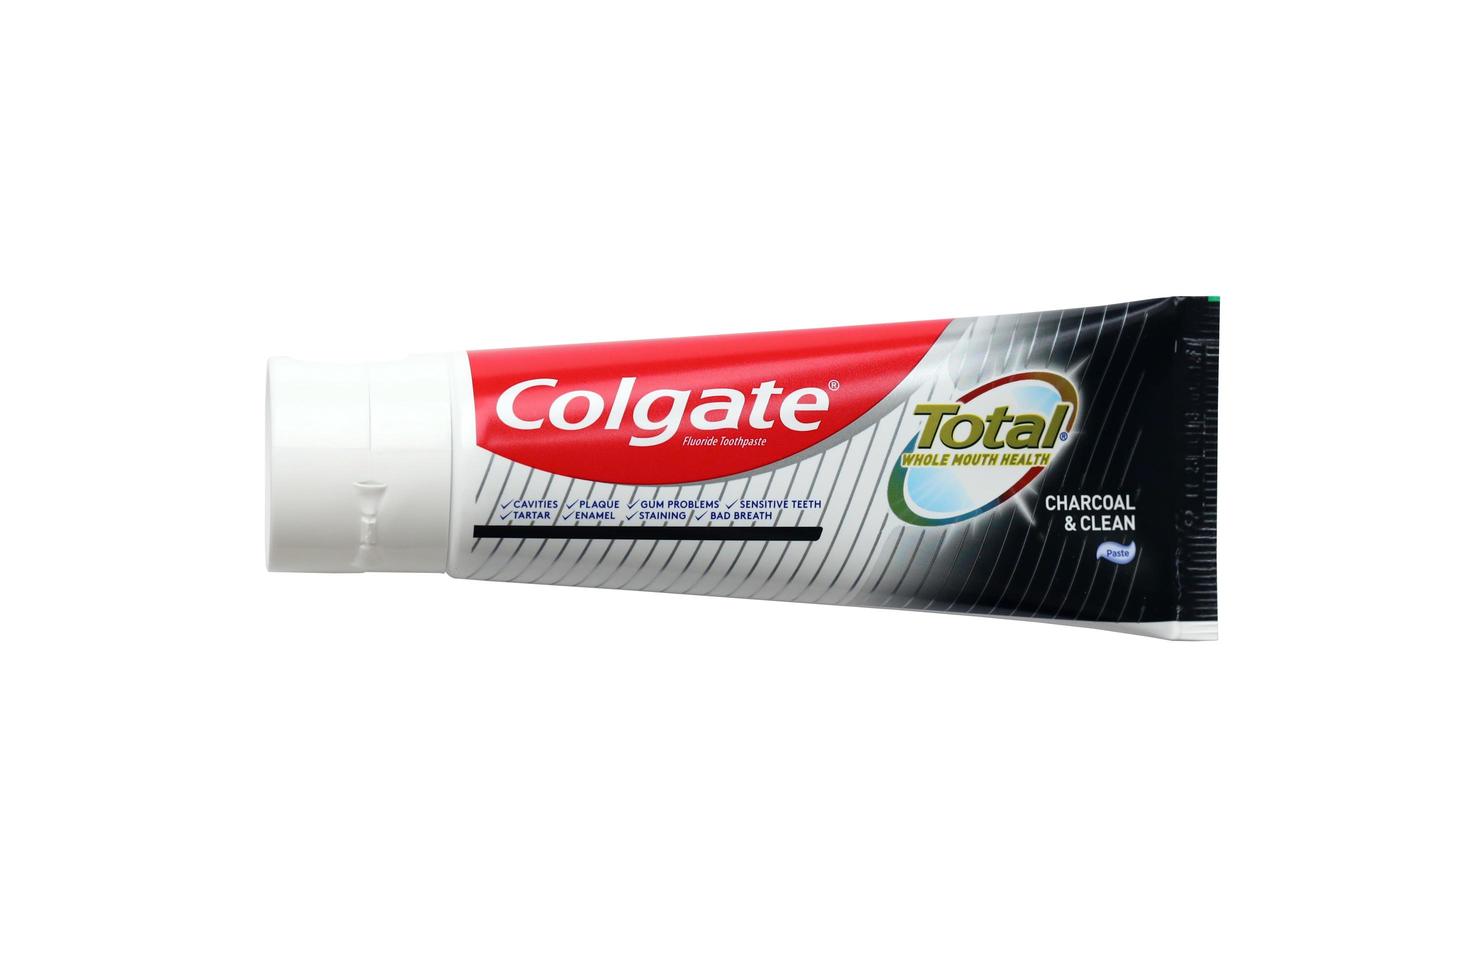 ternopil, Oekraïne - juni 23, 2022 colgate tandpasta, een merk van mondeling hygiëne producten vervaardigd door Amerikaans consumentengoederen bedrijf colgate-palmolive foto